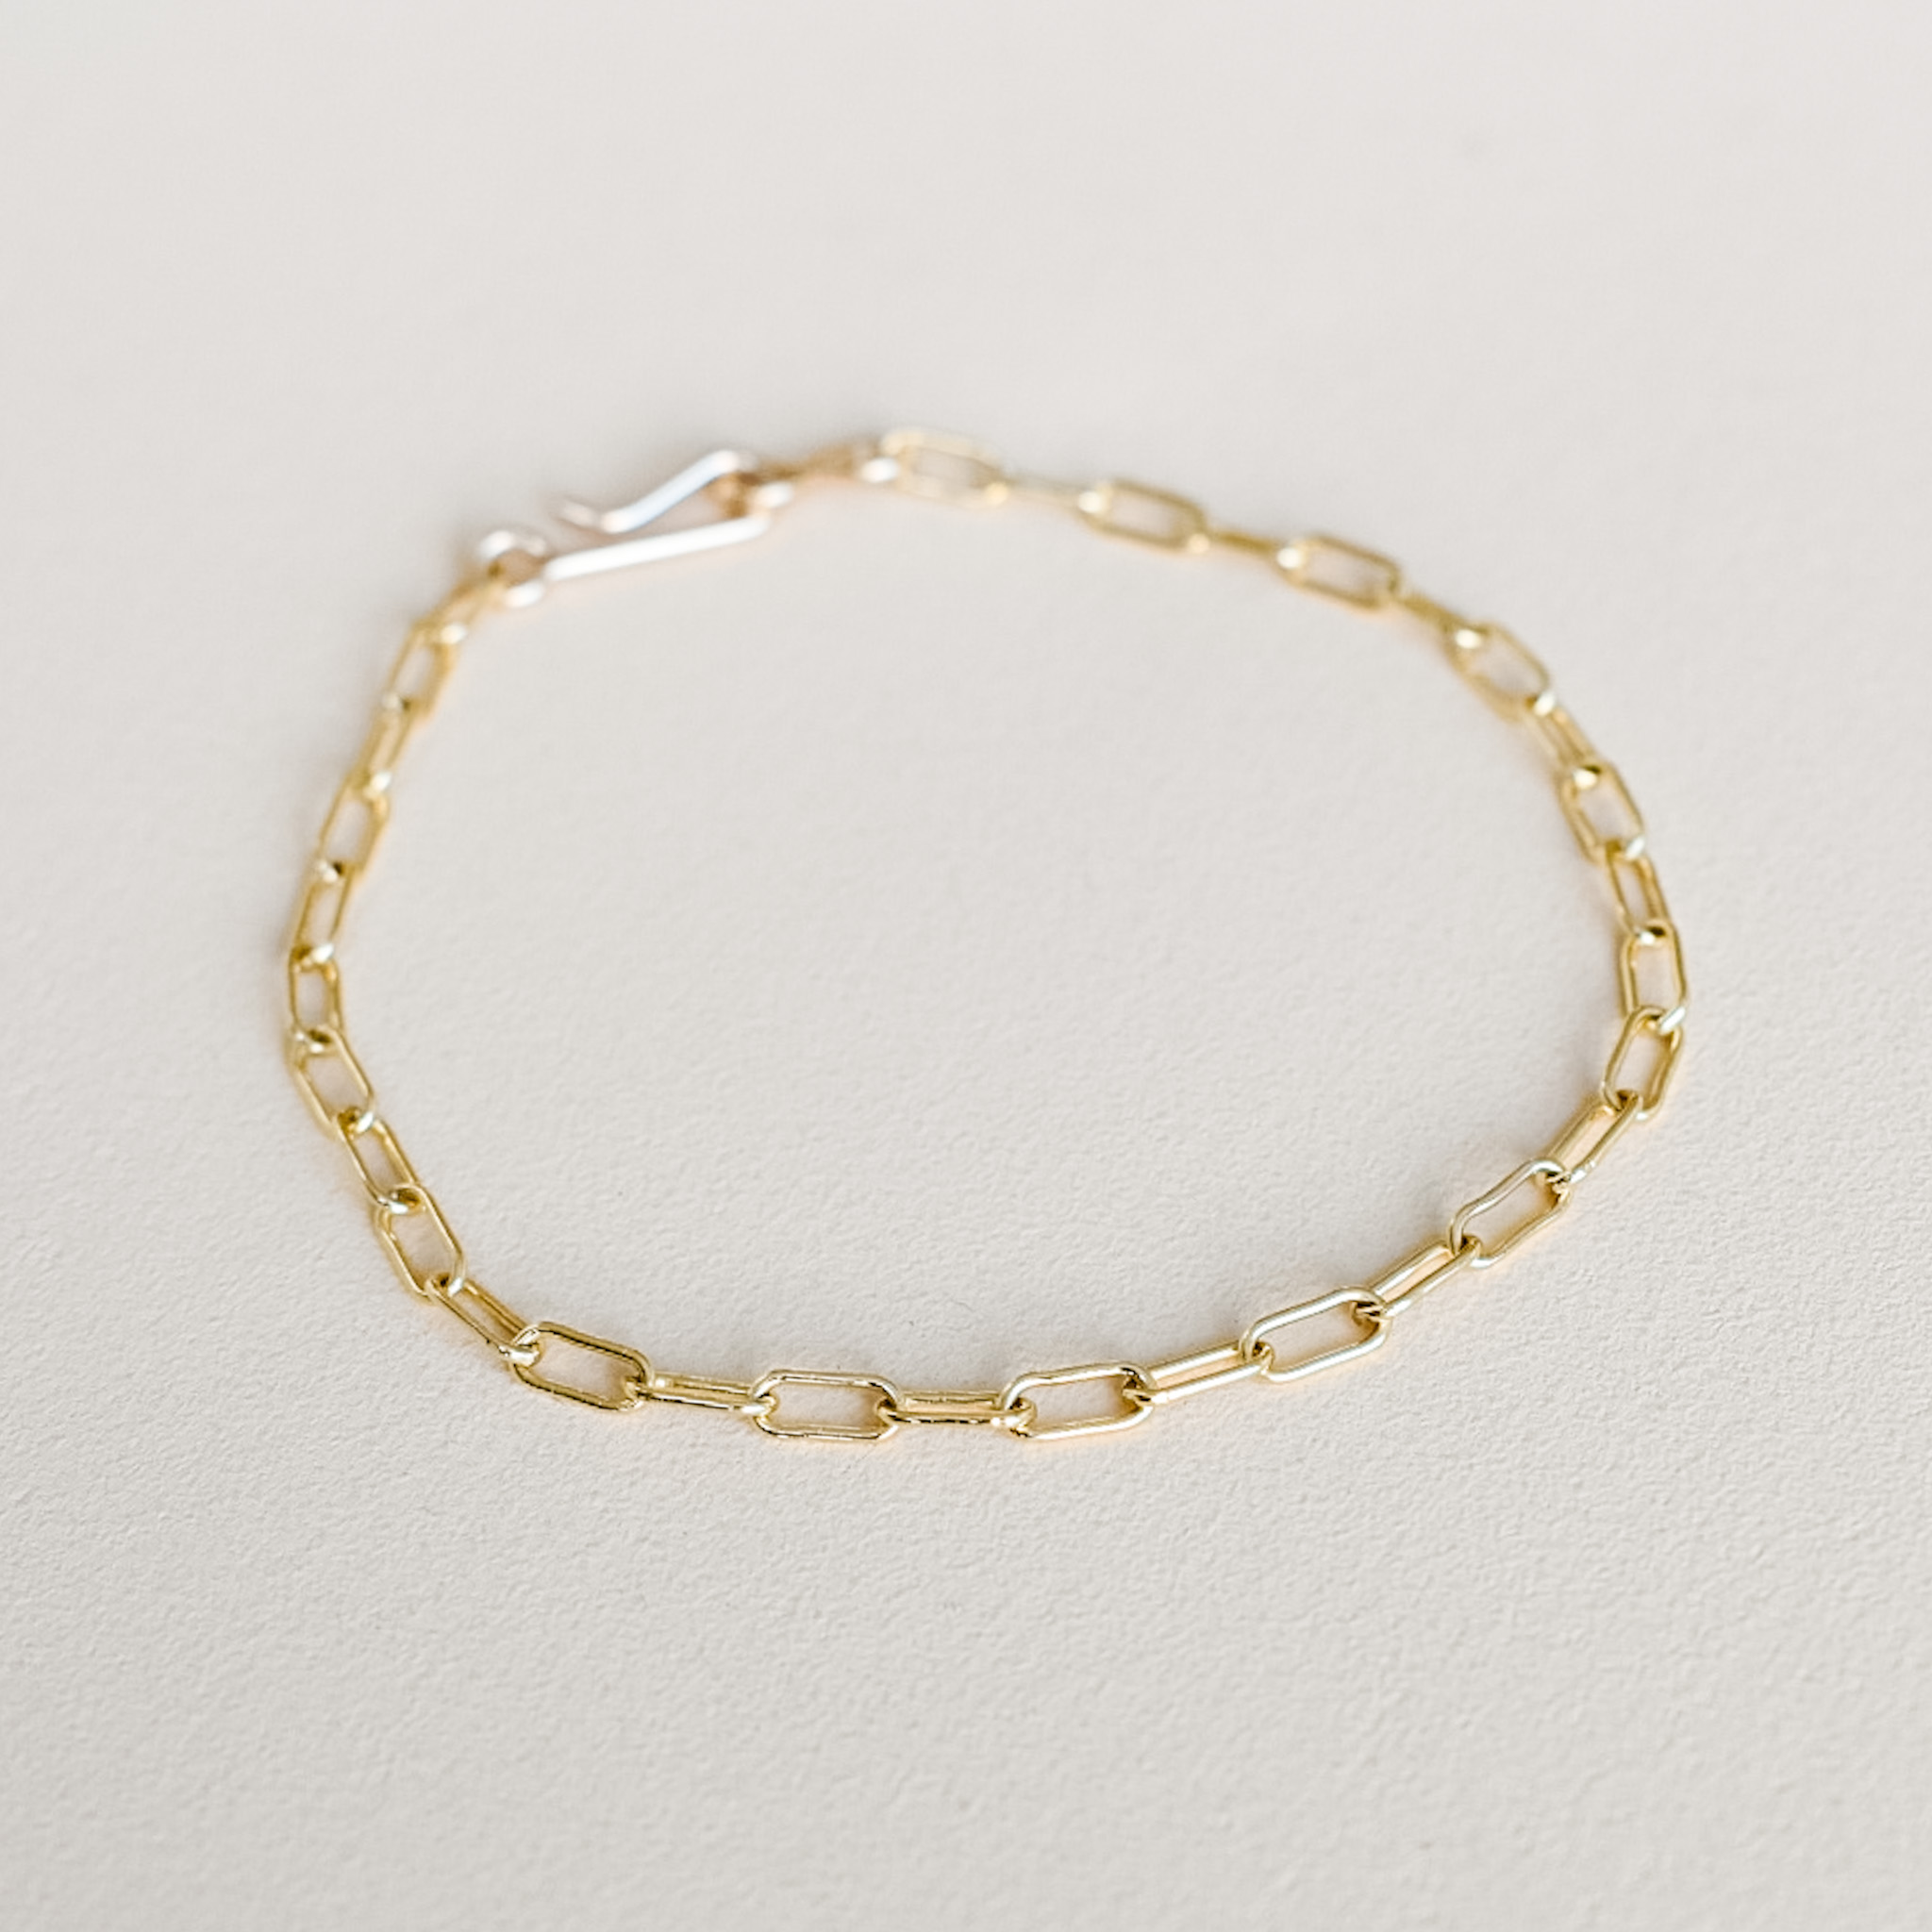 14k_gold_Paperclip_chain_bracelet_necklace_6mm_2.5mm_14K_gold_filled_utah